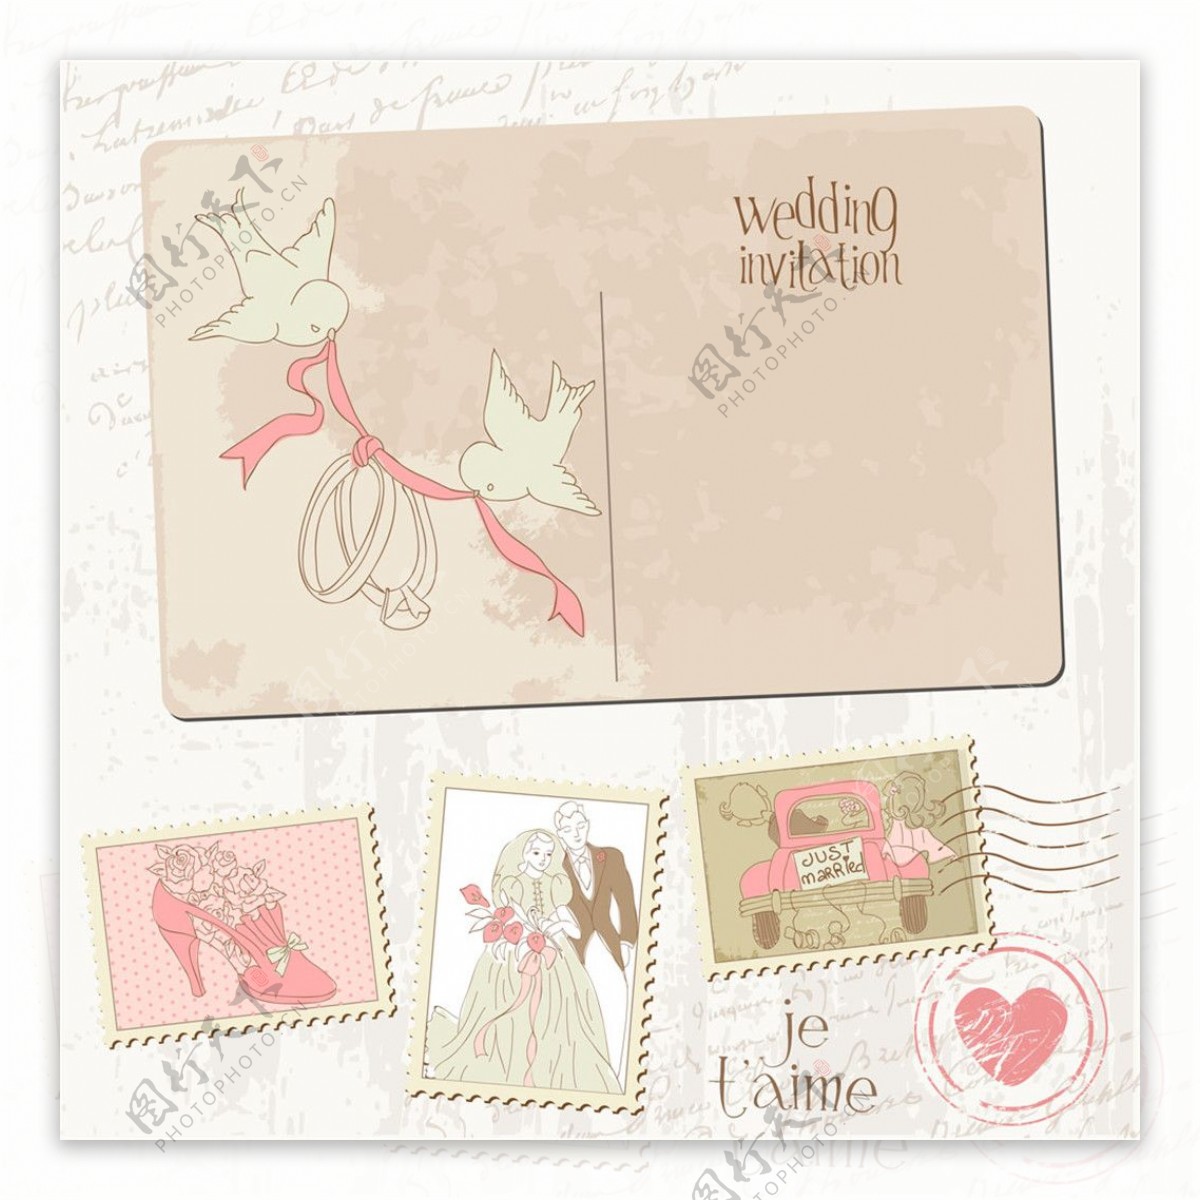 怀旧婚礼邮票与明信片图片